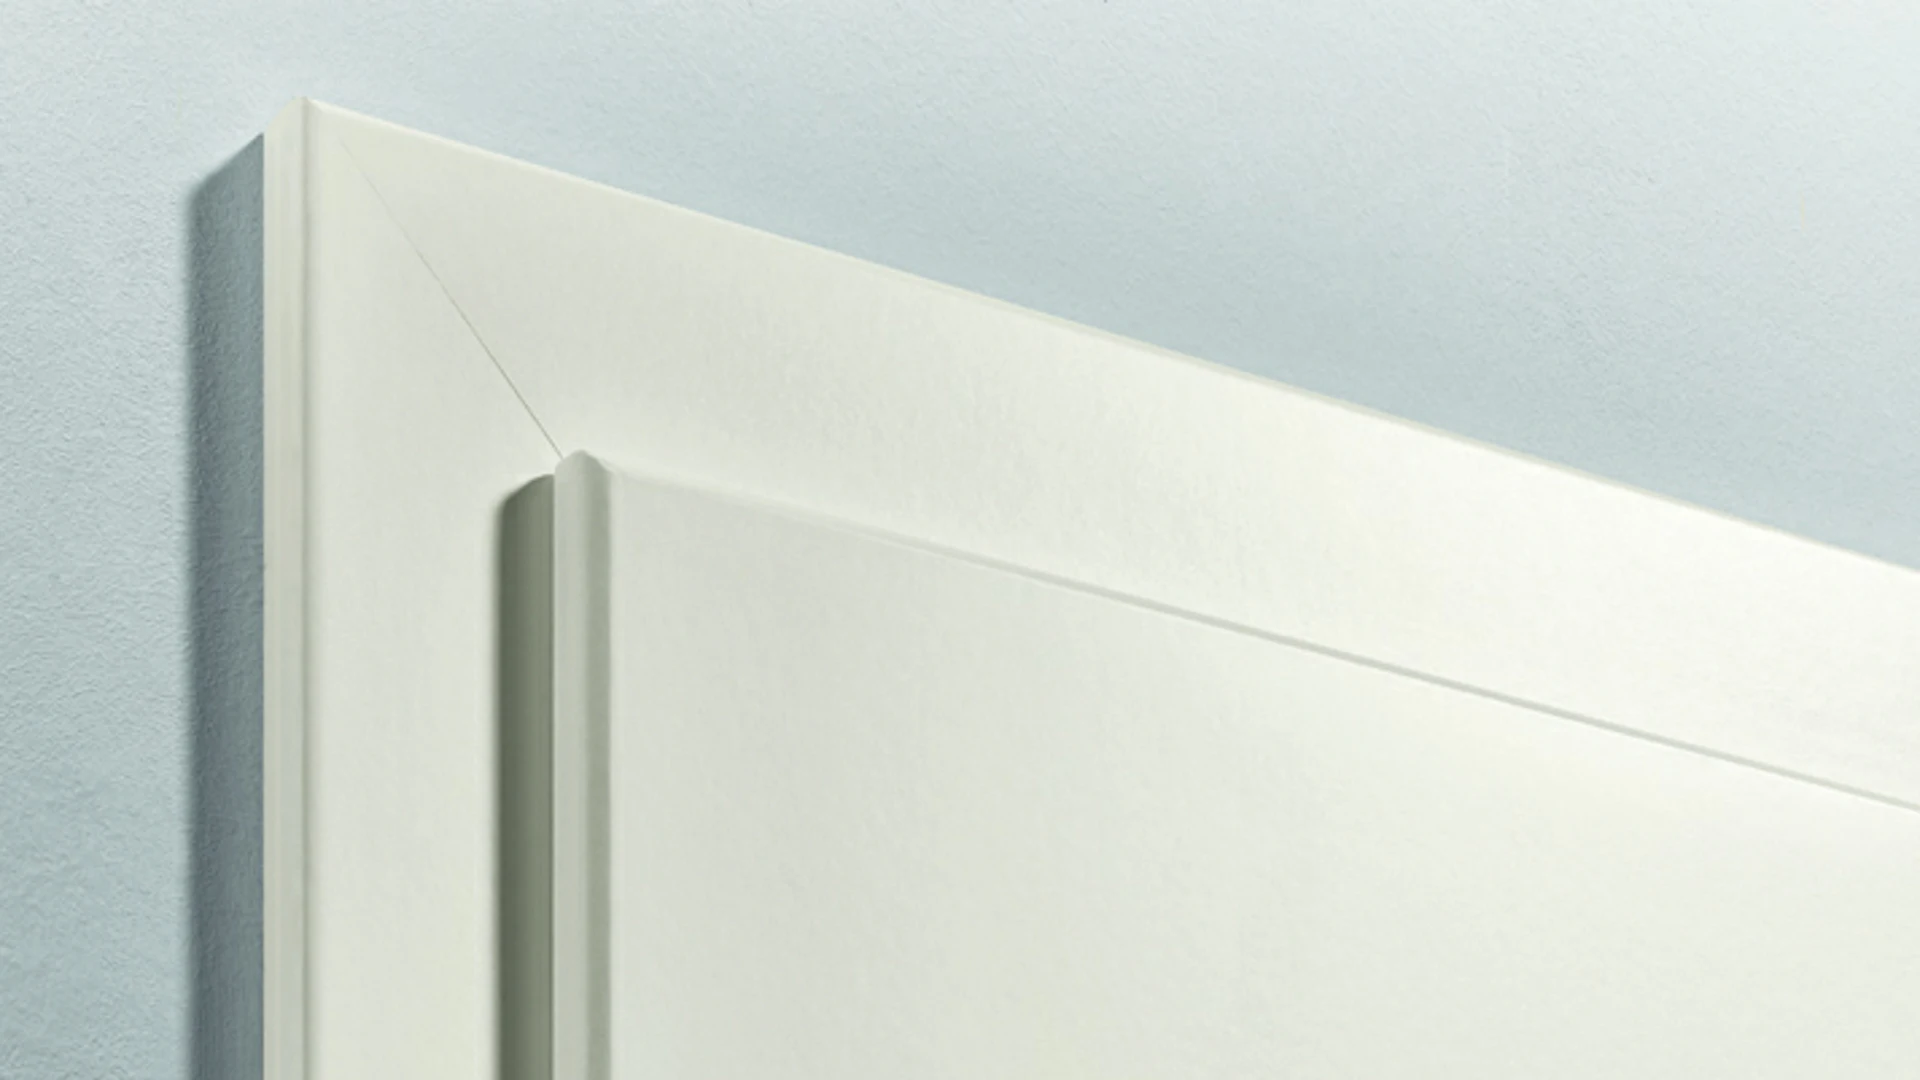 telaio standard planeo bordo rotondo - laccato bianco 9010 - 2110mm